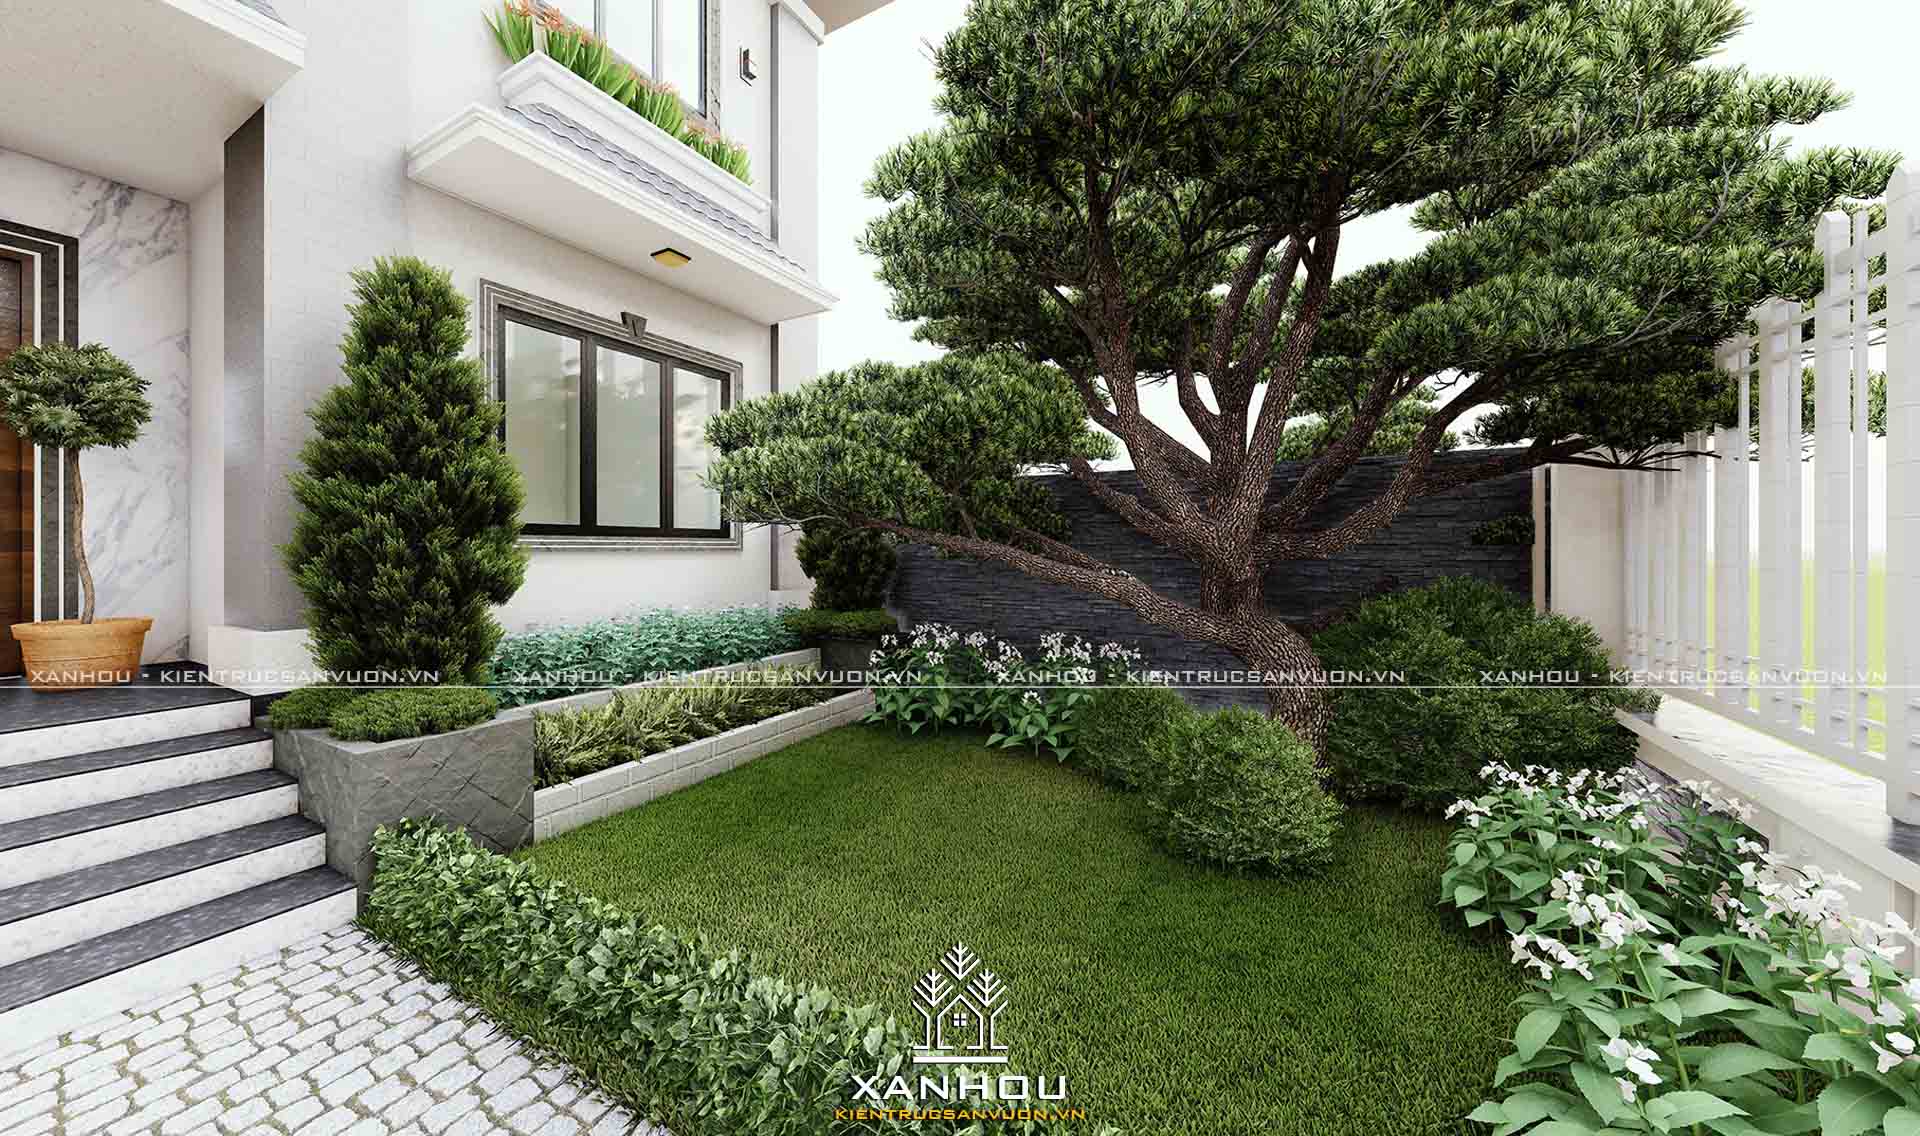 Top 99 mẫu thiết kế sân vườn đẹp hiện đại đơn giản dễ thi công [2022] - Sân vườn Xanhou 8